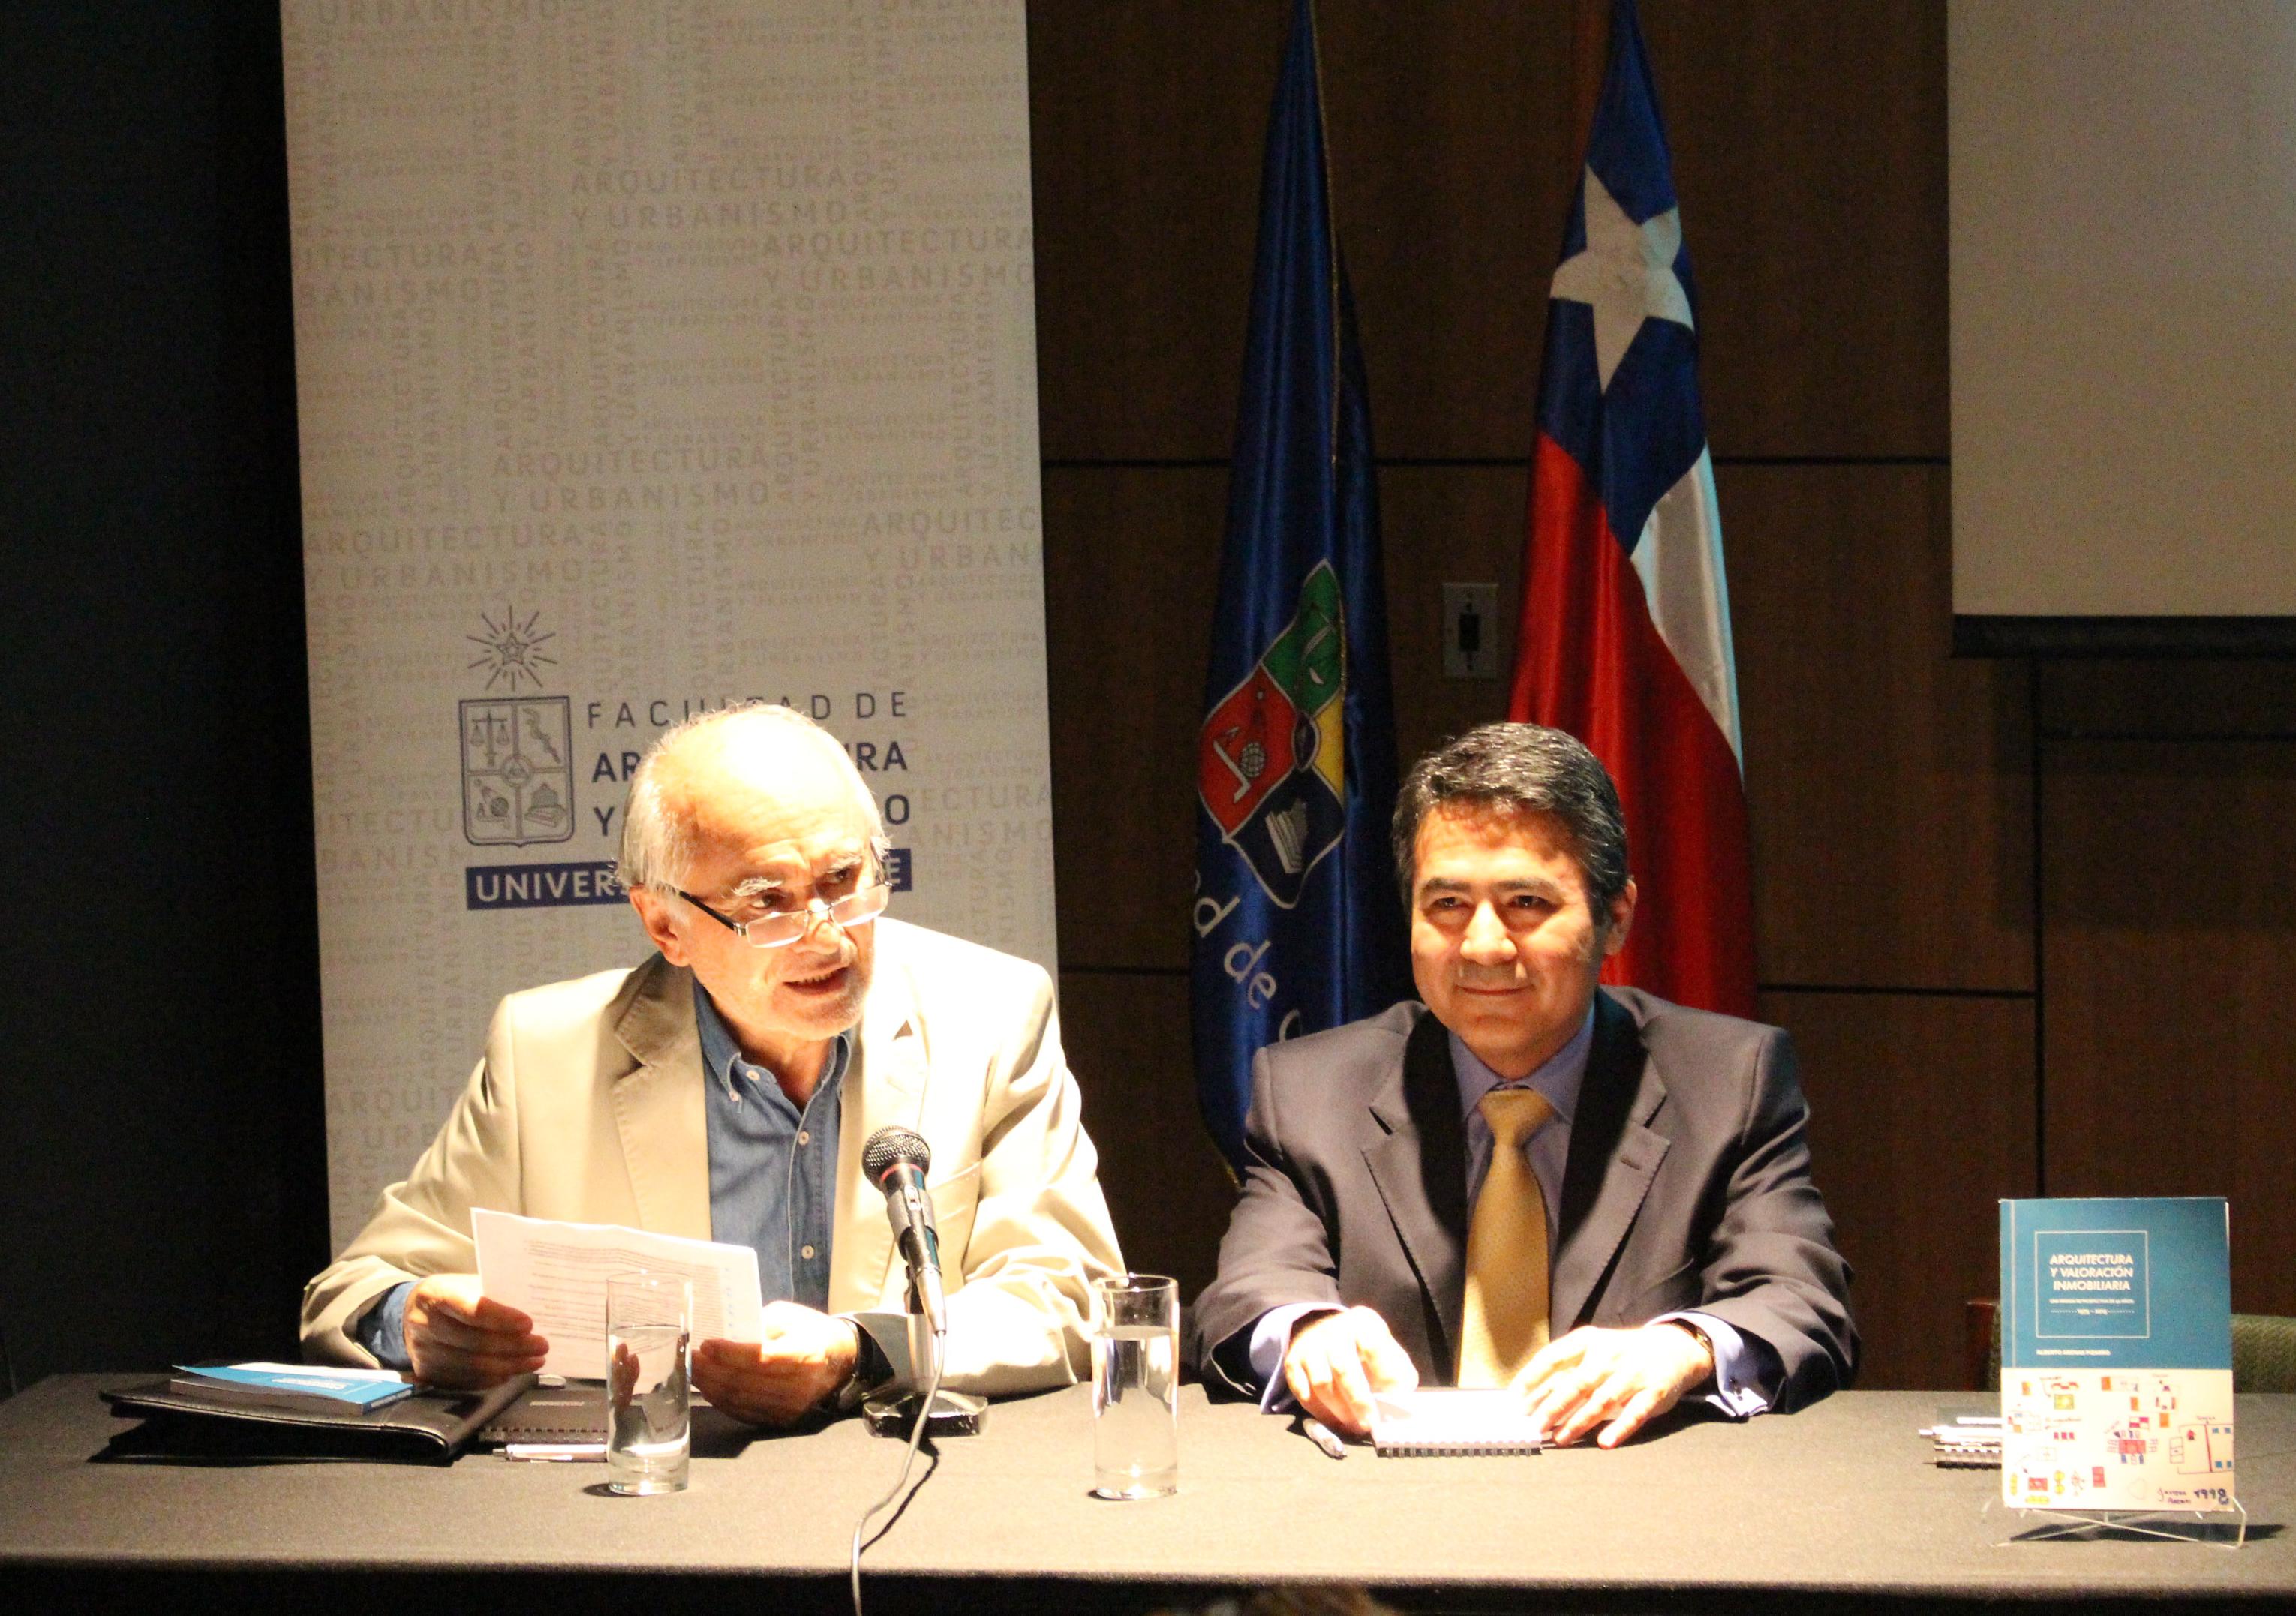 Profesores Alejandro Abarzúa y Teodosio Cayo comentaron el libro de Alberto Arenas.